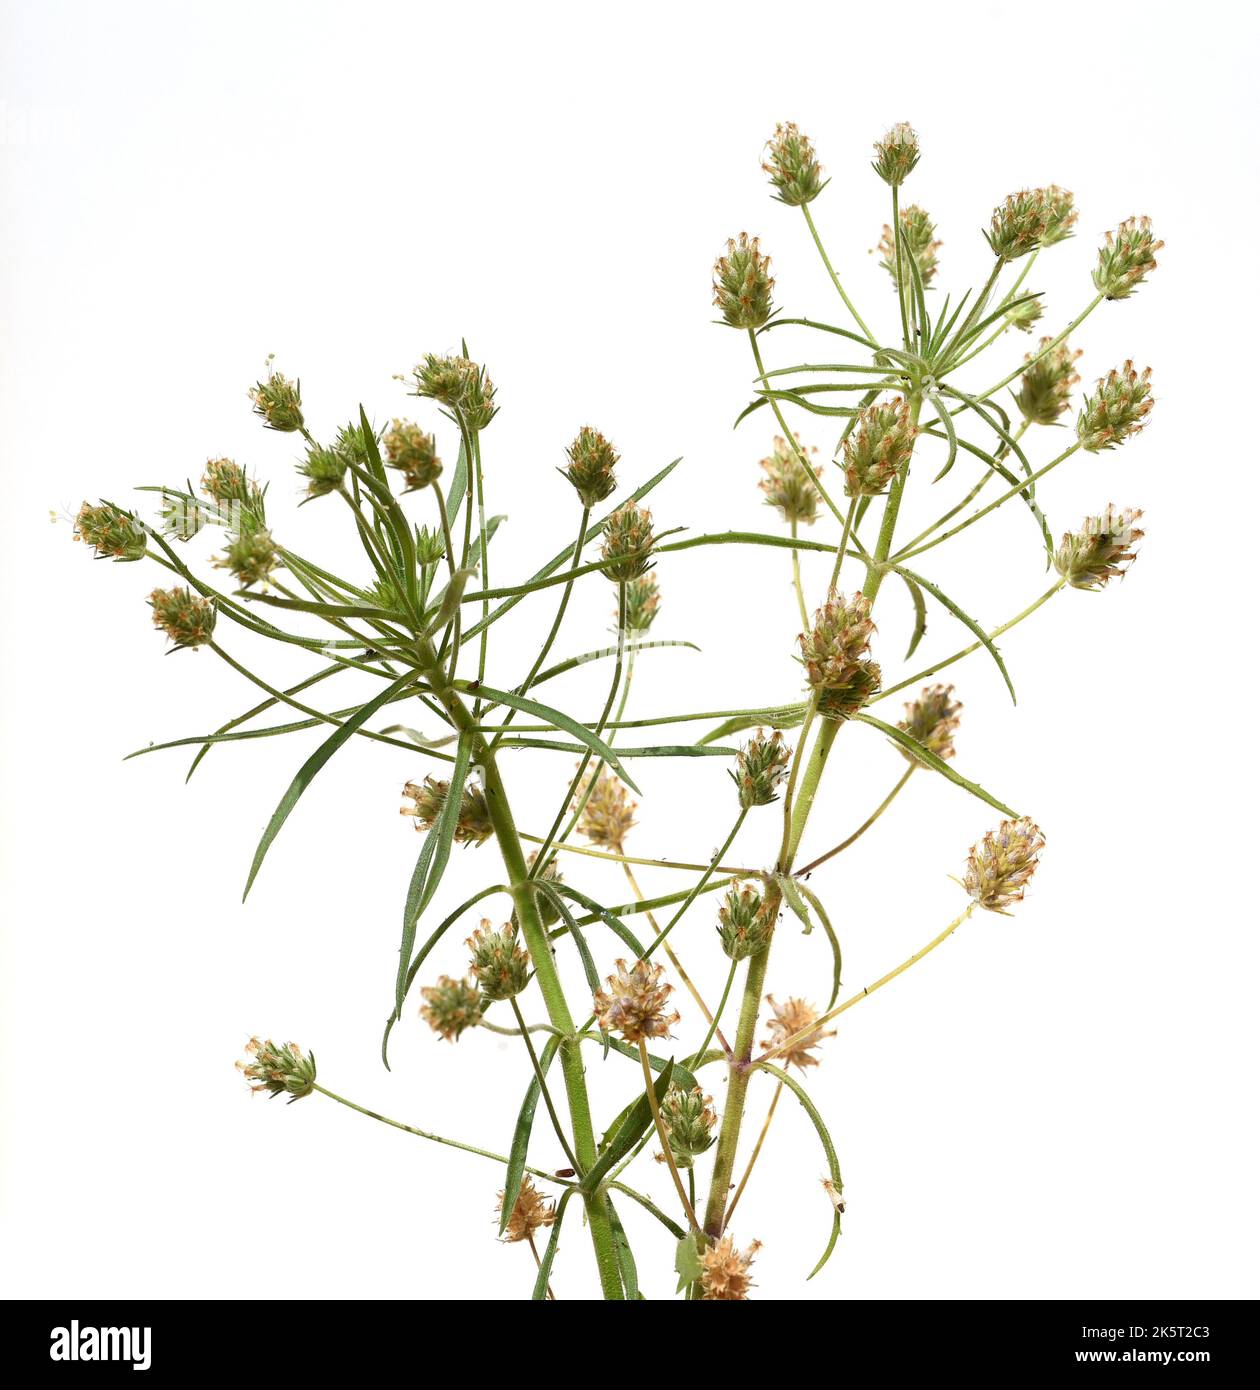 Flohsamen, Afra plantago ist eine wichtige Heilpflanze und wird haeufig in der Medizin verwendet. Die Pflanze ist einjaehrig. Psyllium negro, Afra pla Foto de stock